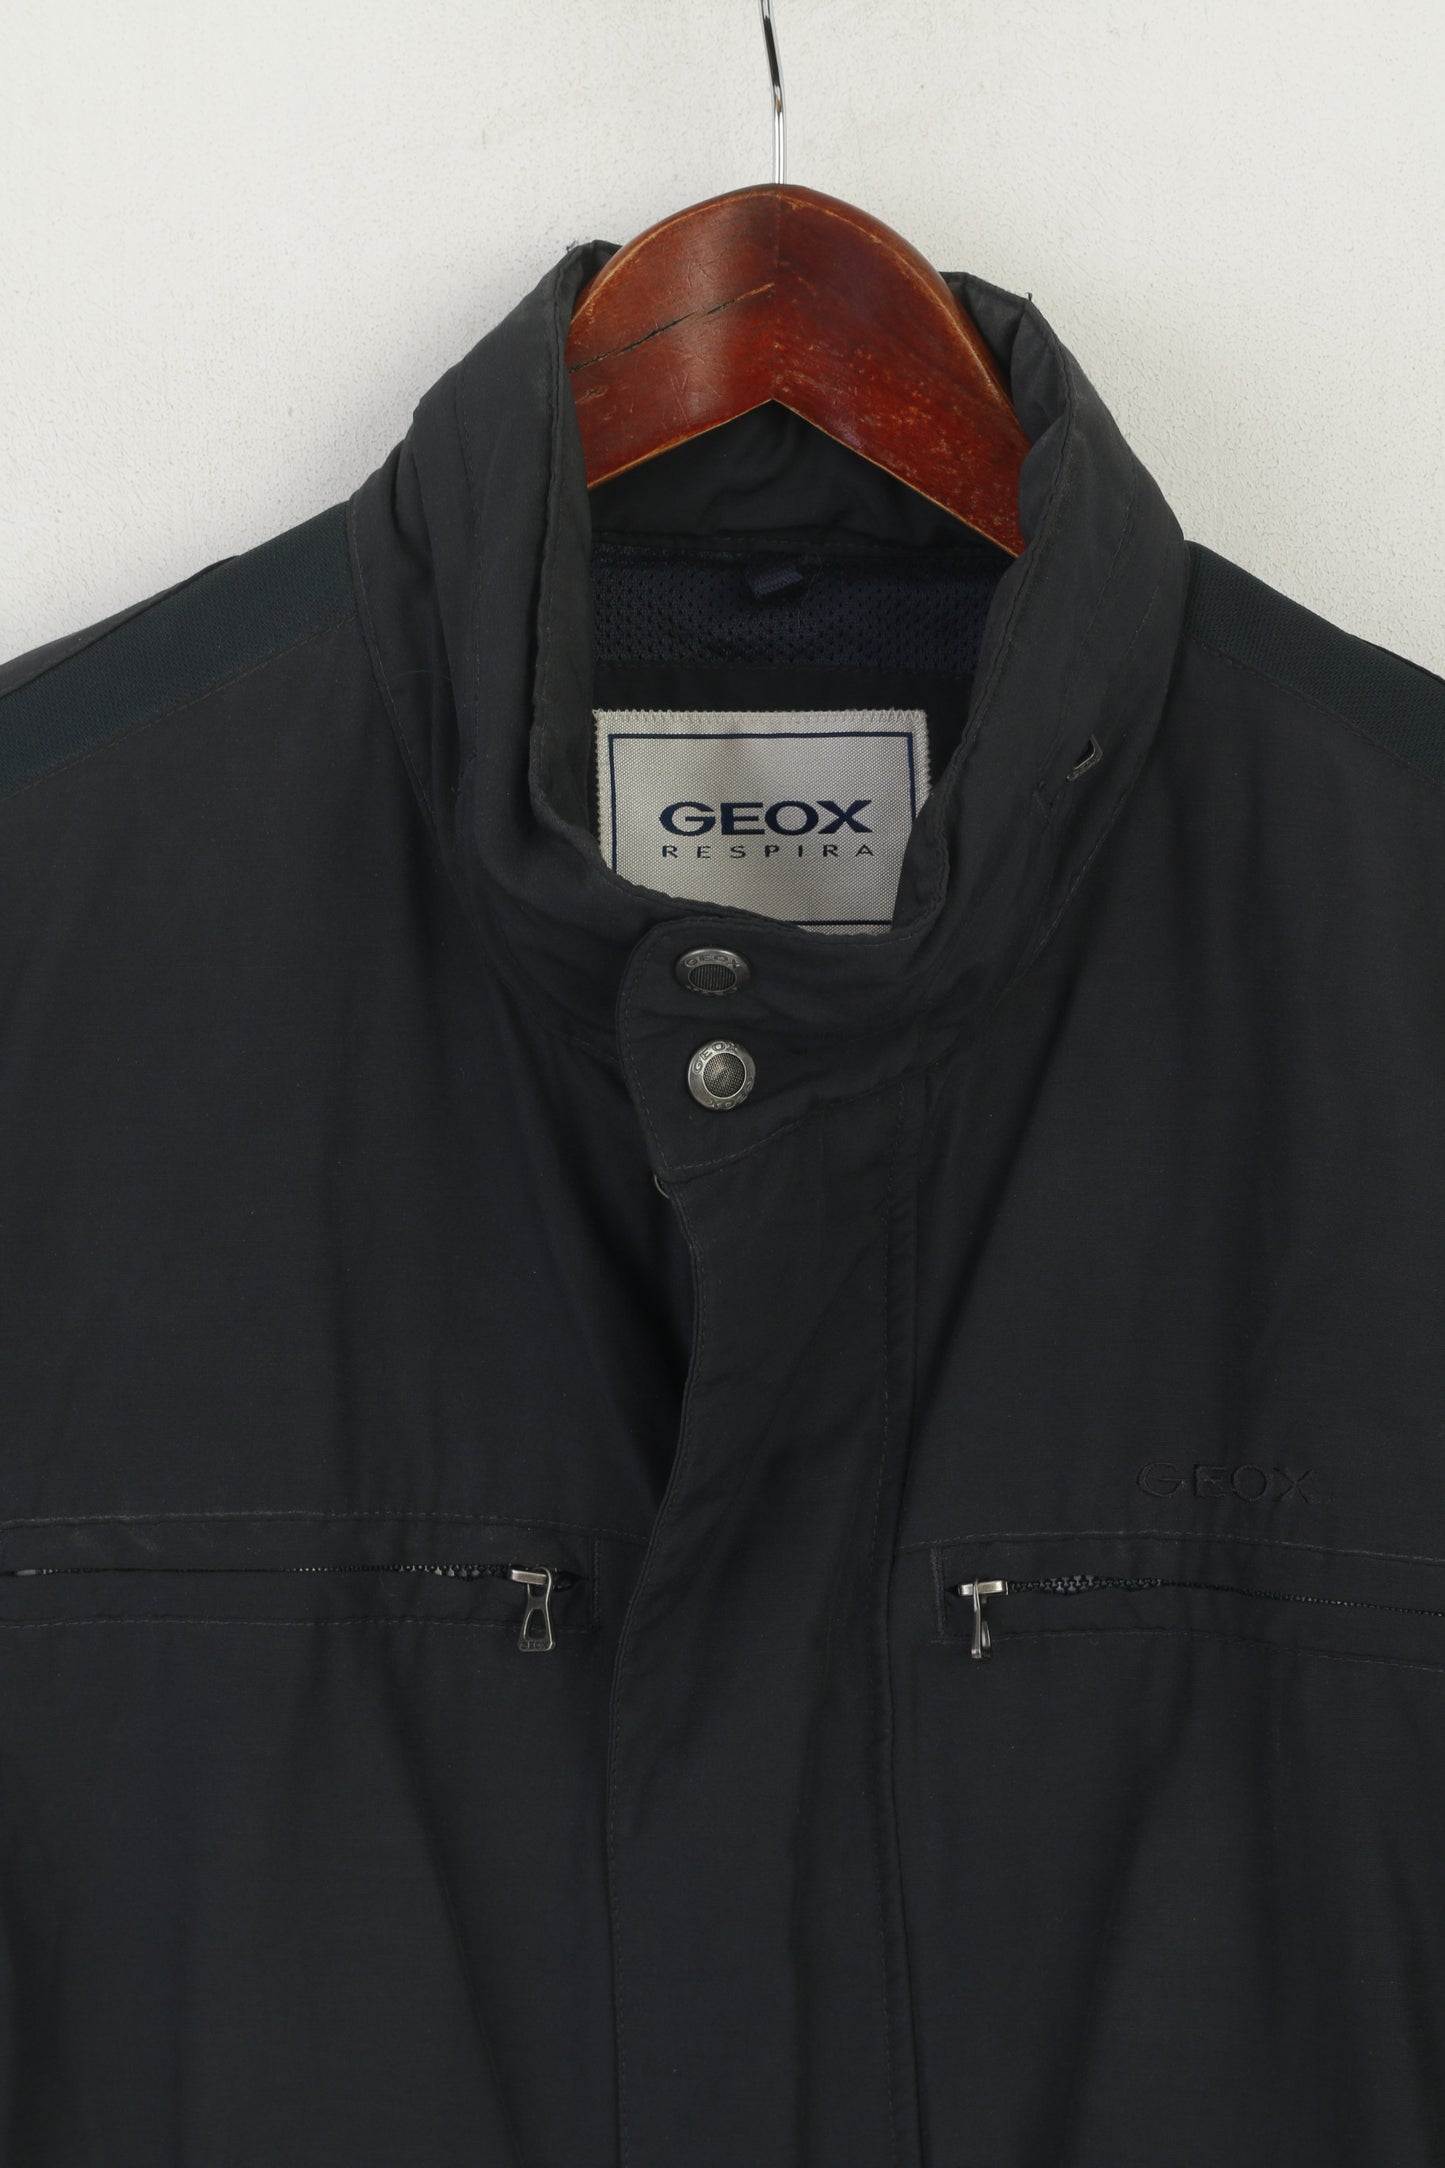 Geox Respira Men 48 S Jacket Dark Gray Nylon Cotton Lightweight HIdden hood Zip Up Top